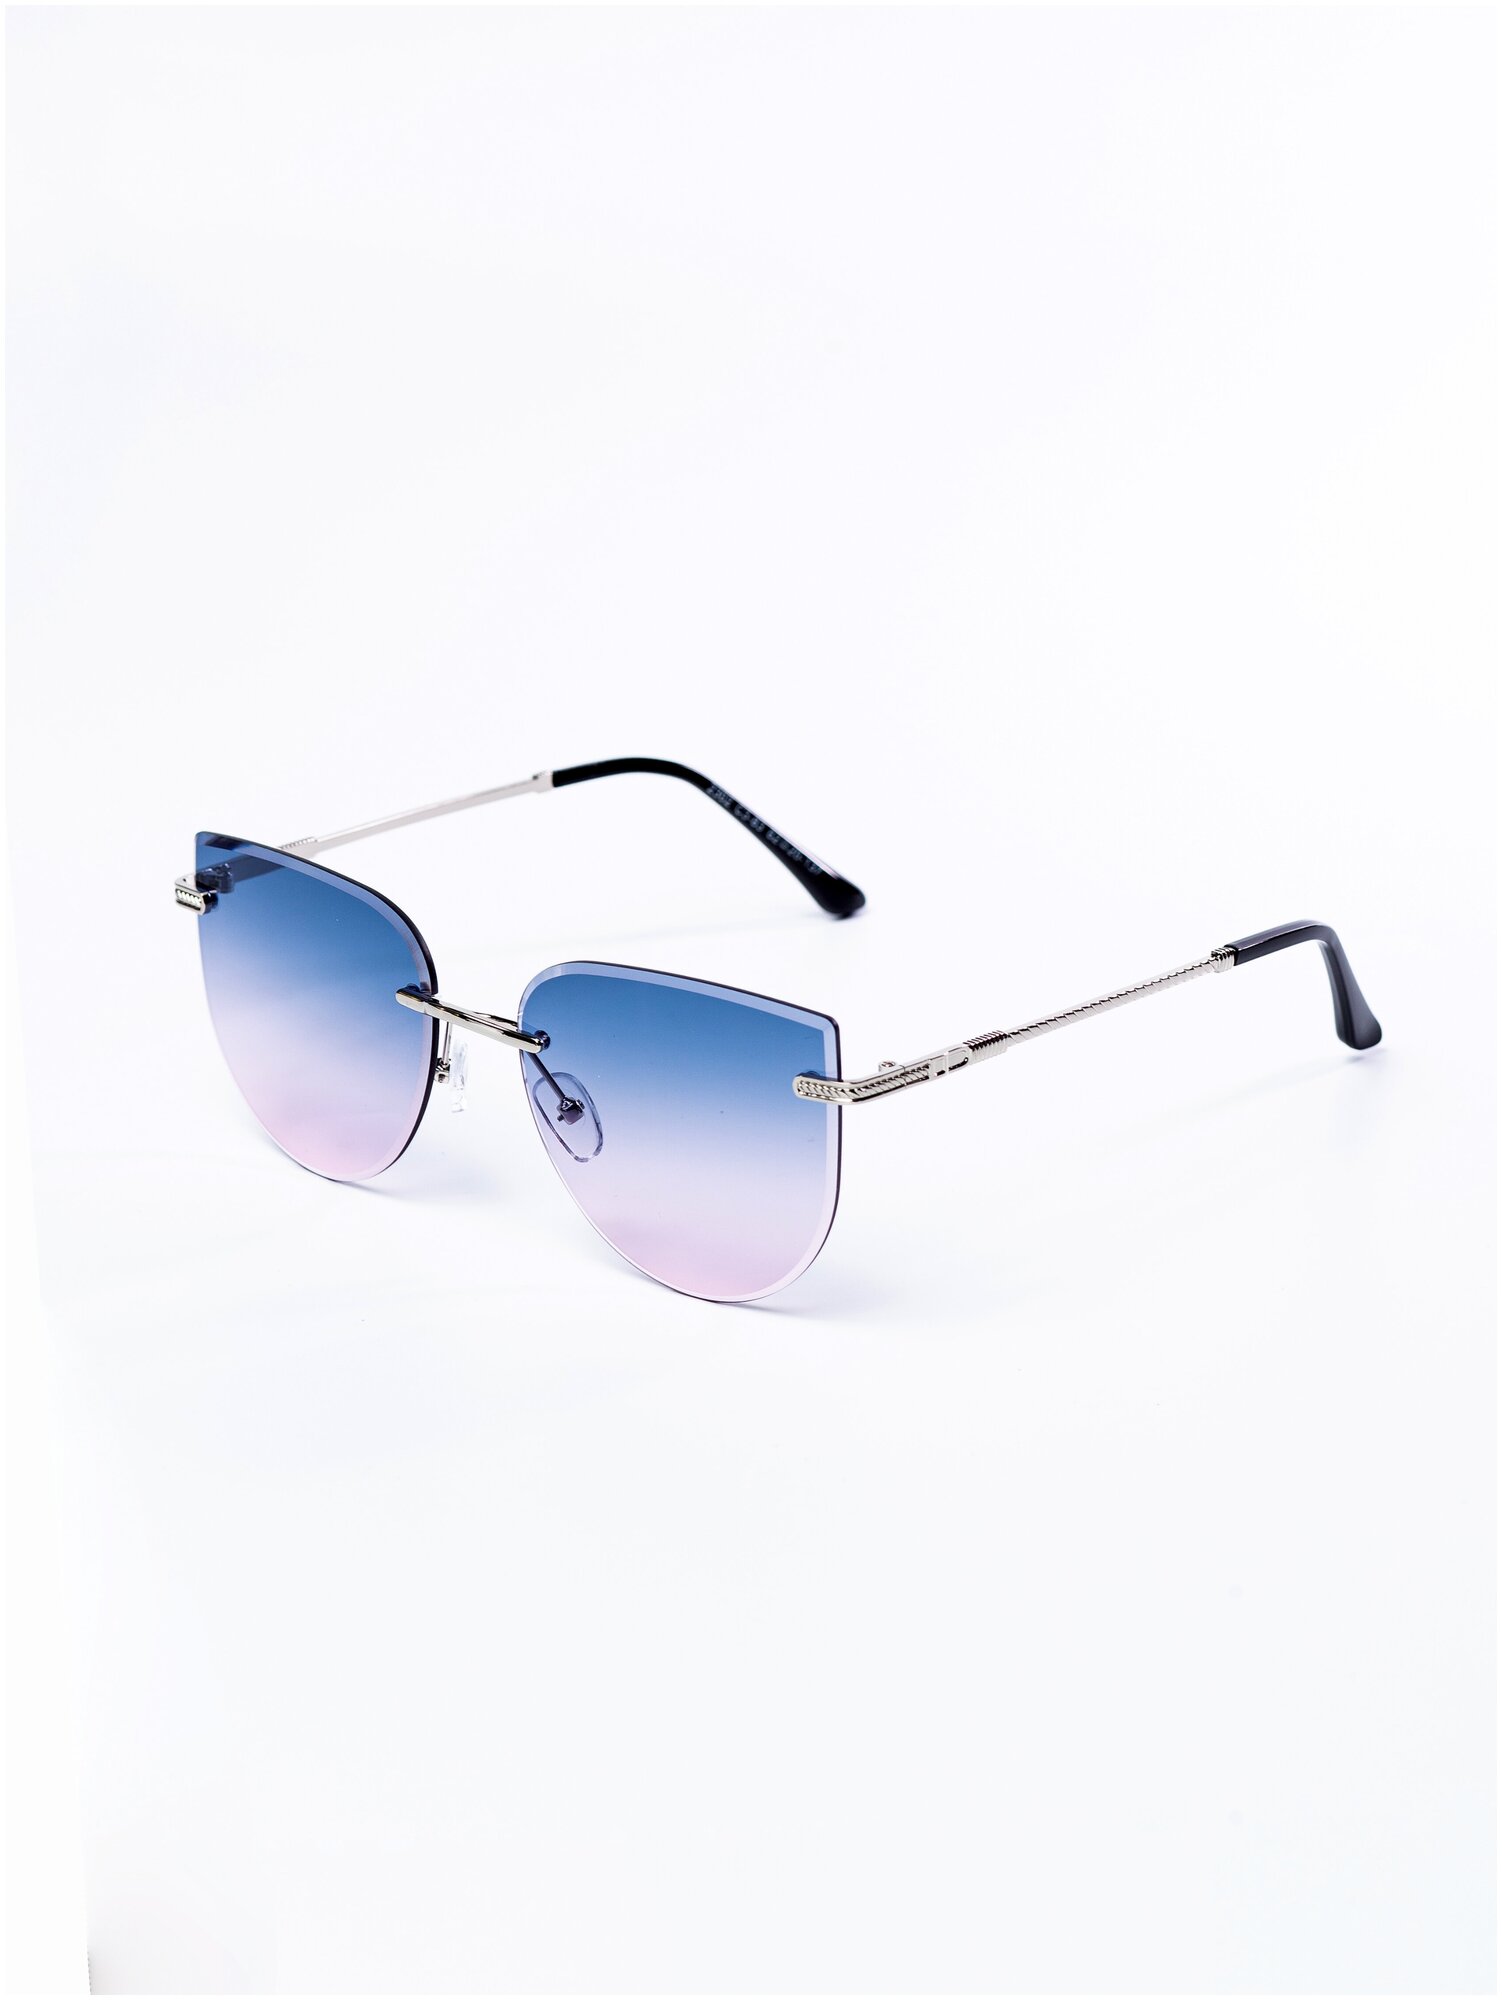 Солнцезащитные очки женские / Оправа кошачий глаз / Стильные очки / Ультрафиолетовый фильтр / Защита UV400 / Чехол в подарок / Темные очки 200422520